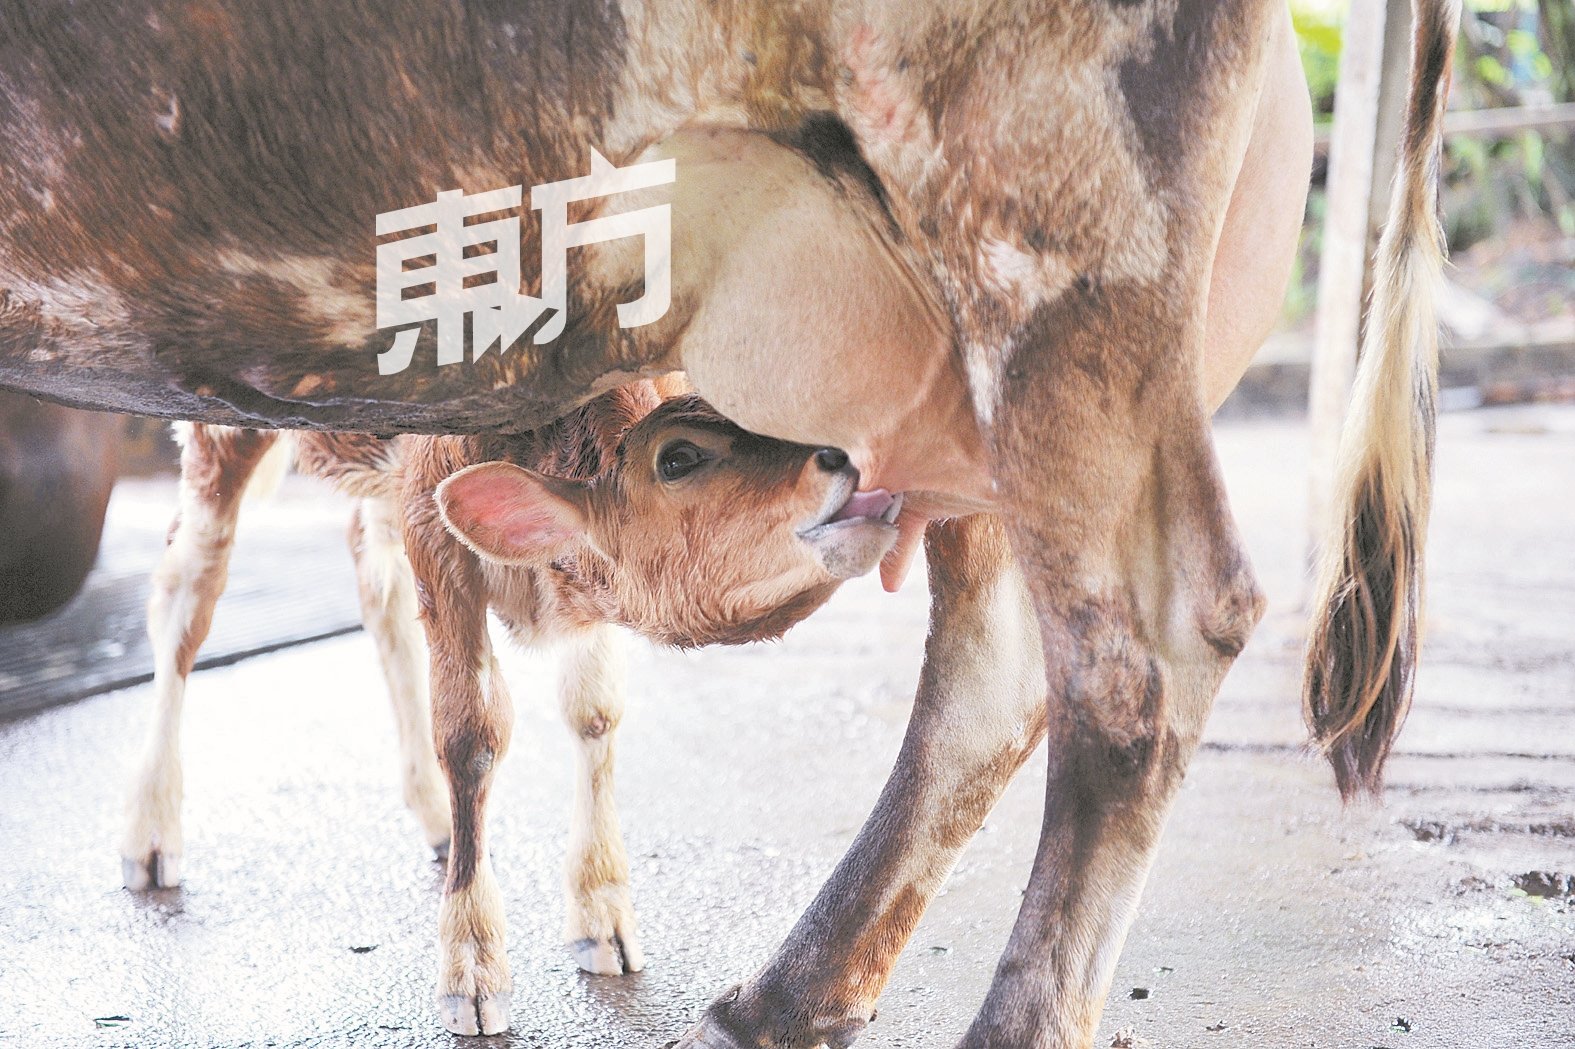 尽管其他牧场购买奶粉，冲泡给小牛喝以节省成本，吴士尧选择让小牛喝母奶，提高其免疫力以确保健壮成长。